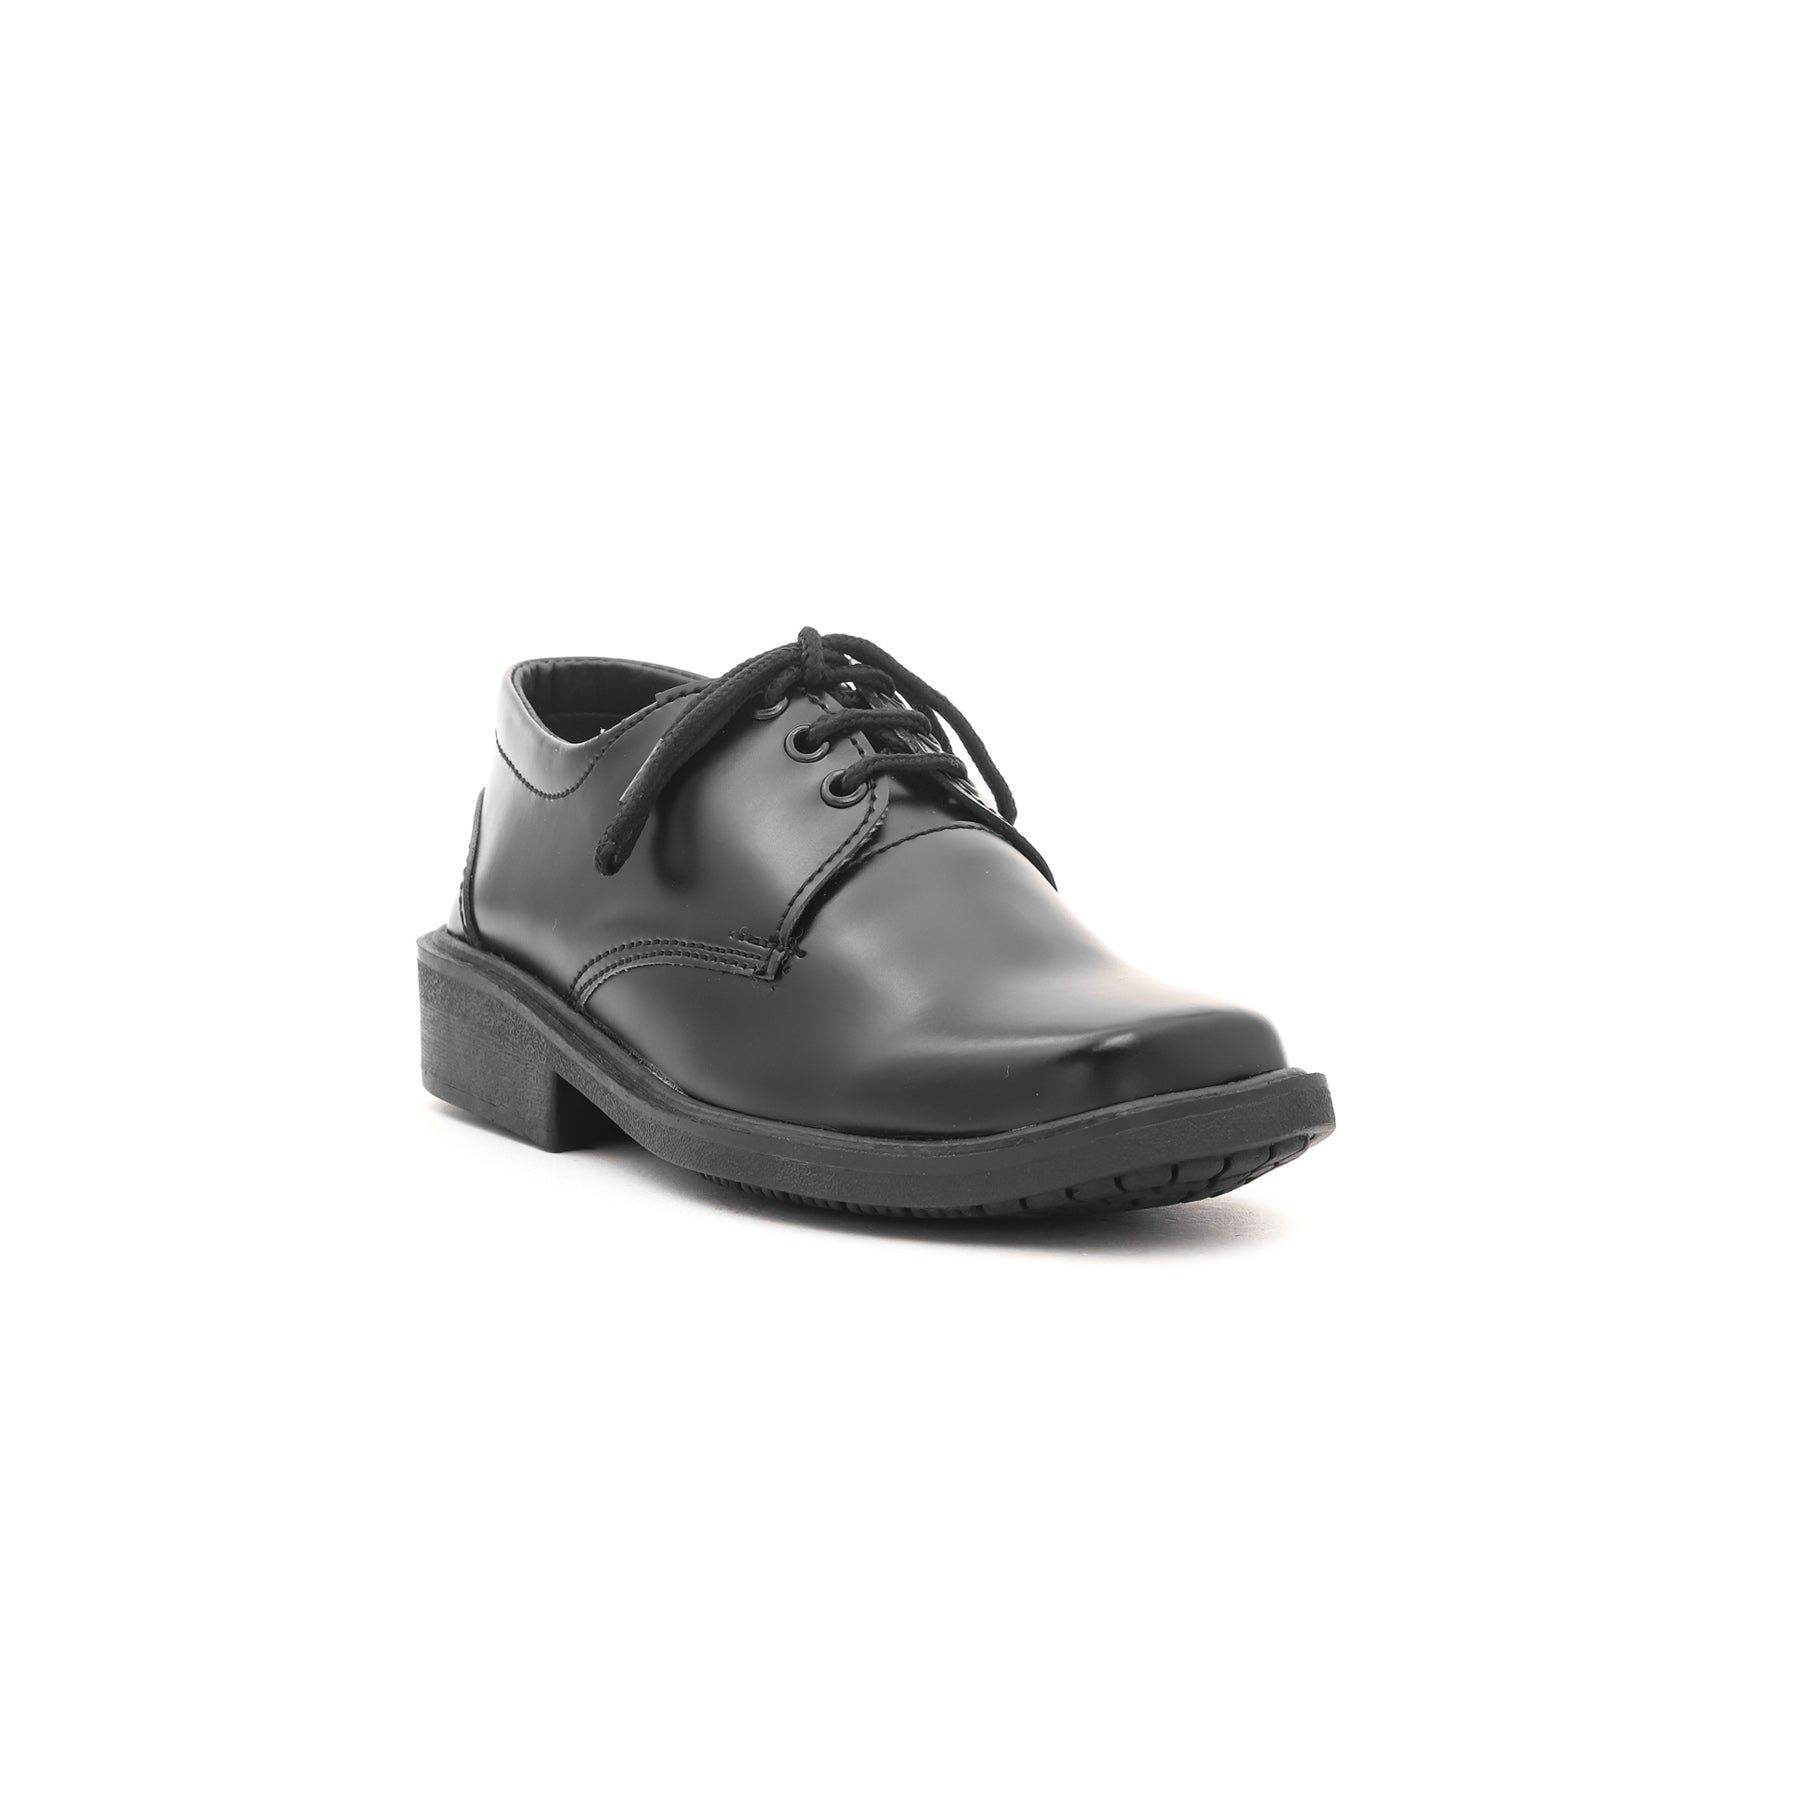 Boys Black School Shoes SK1051